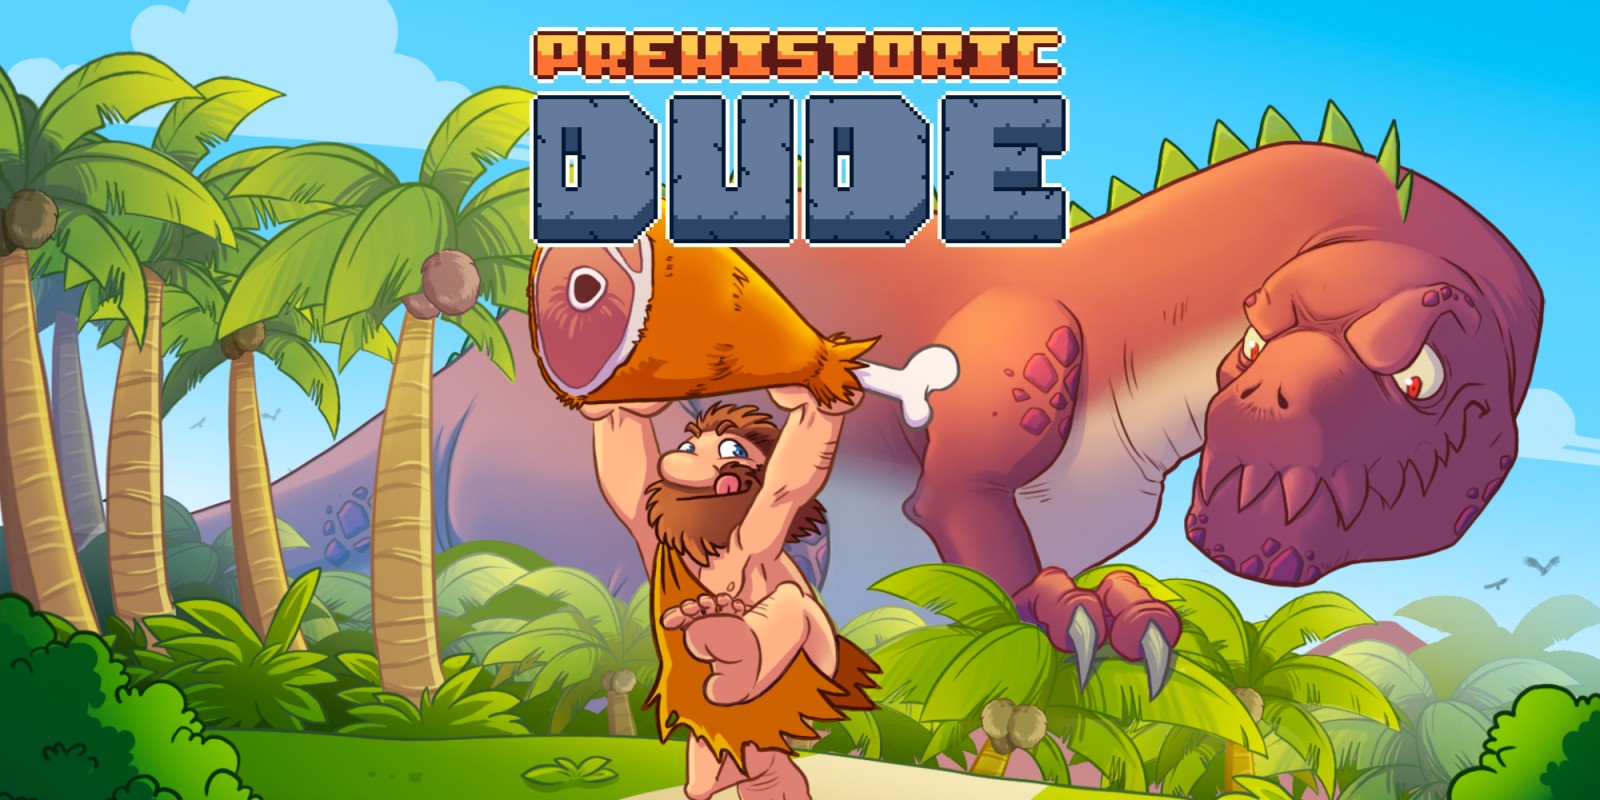 Prehistoric Dude | Nintendo Switch download software | Games | Nintendo